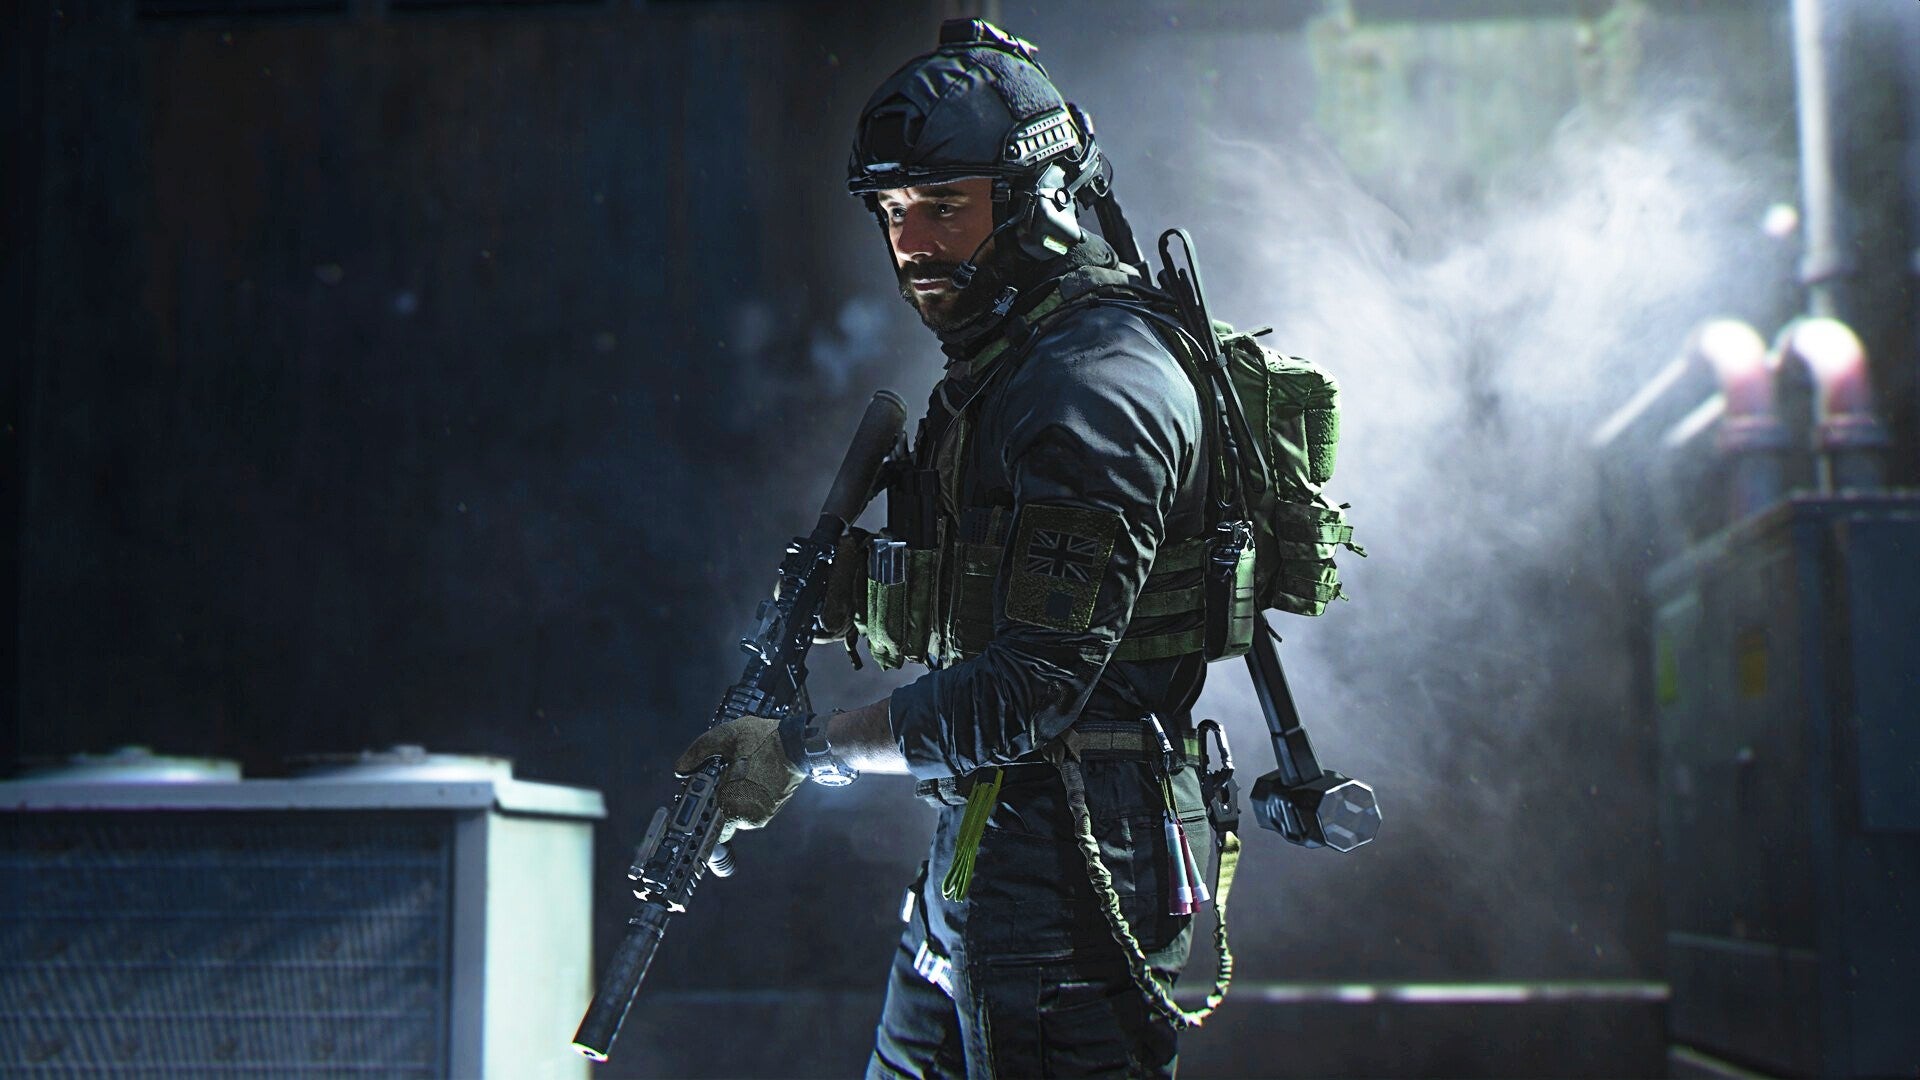 Bilder zu Call of Duty: Modern Warfare 2 – Test: "Auf Nummer sicher" ist nach Vanguard gut genug